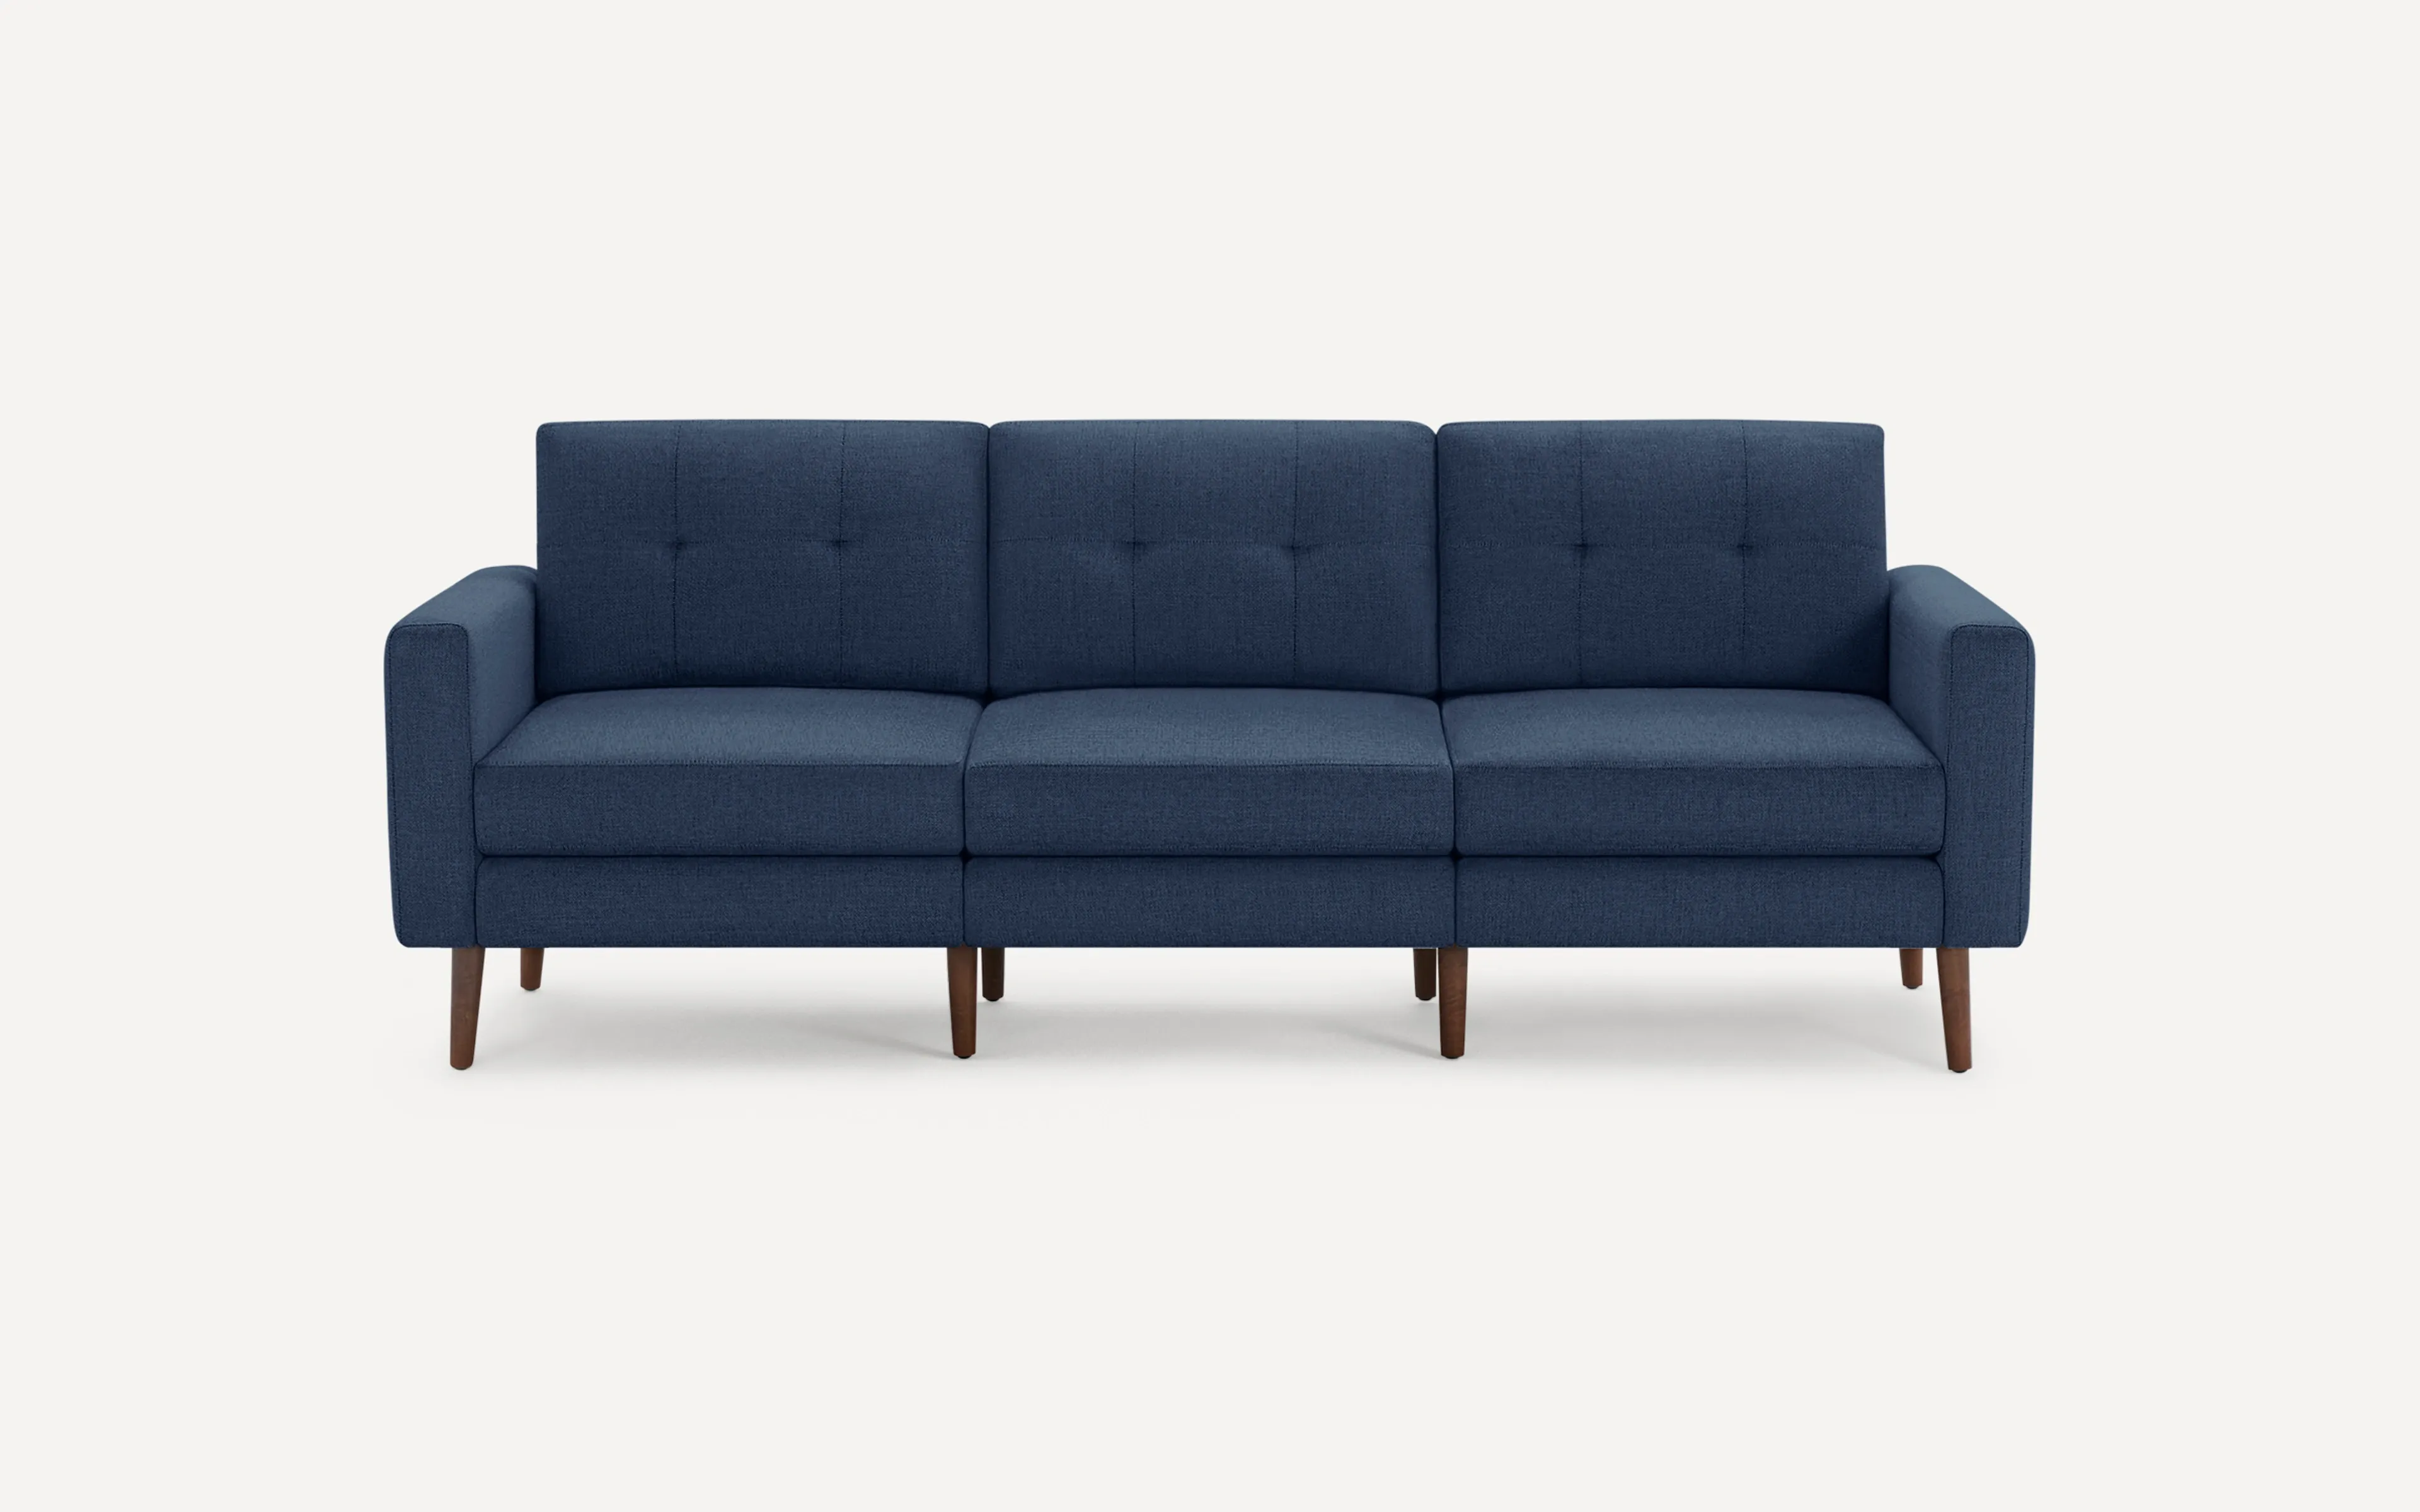 Original Nomad Sofa in Navy Blue Fabric